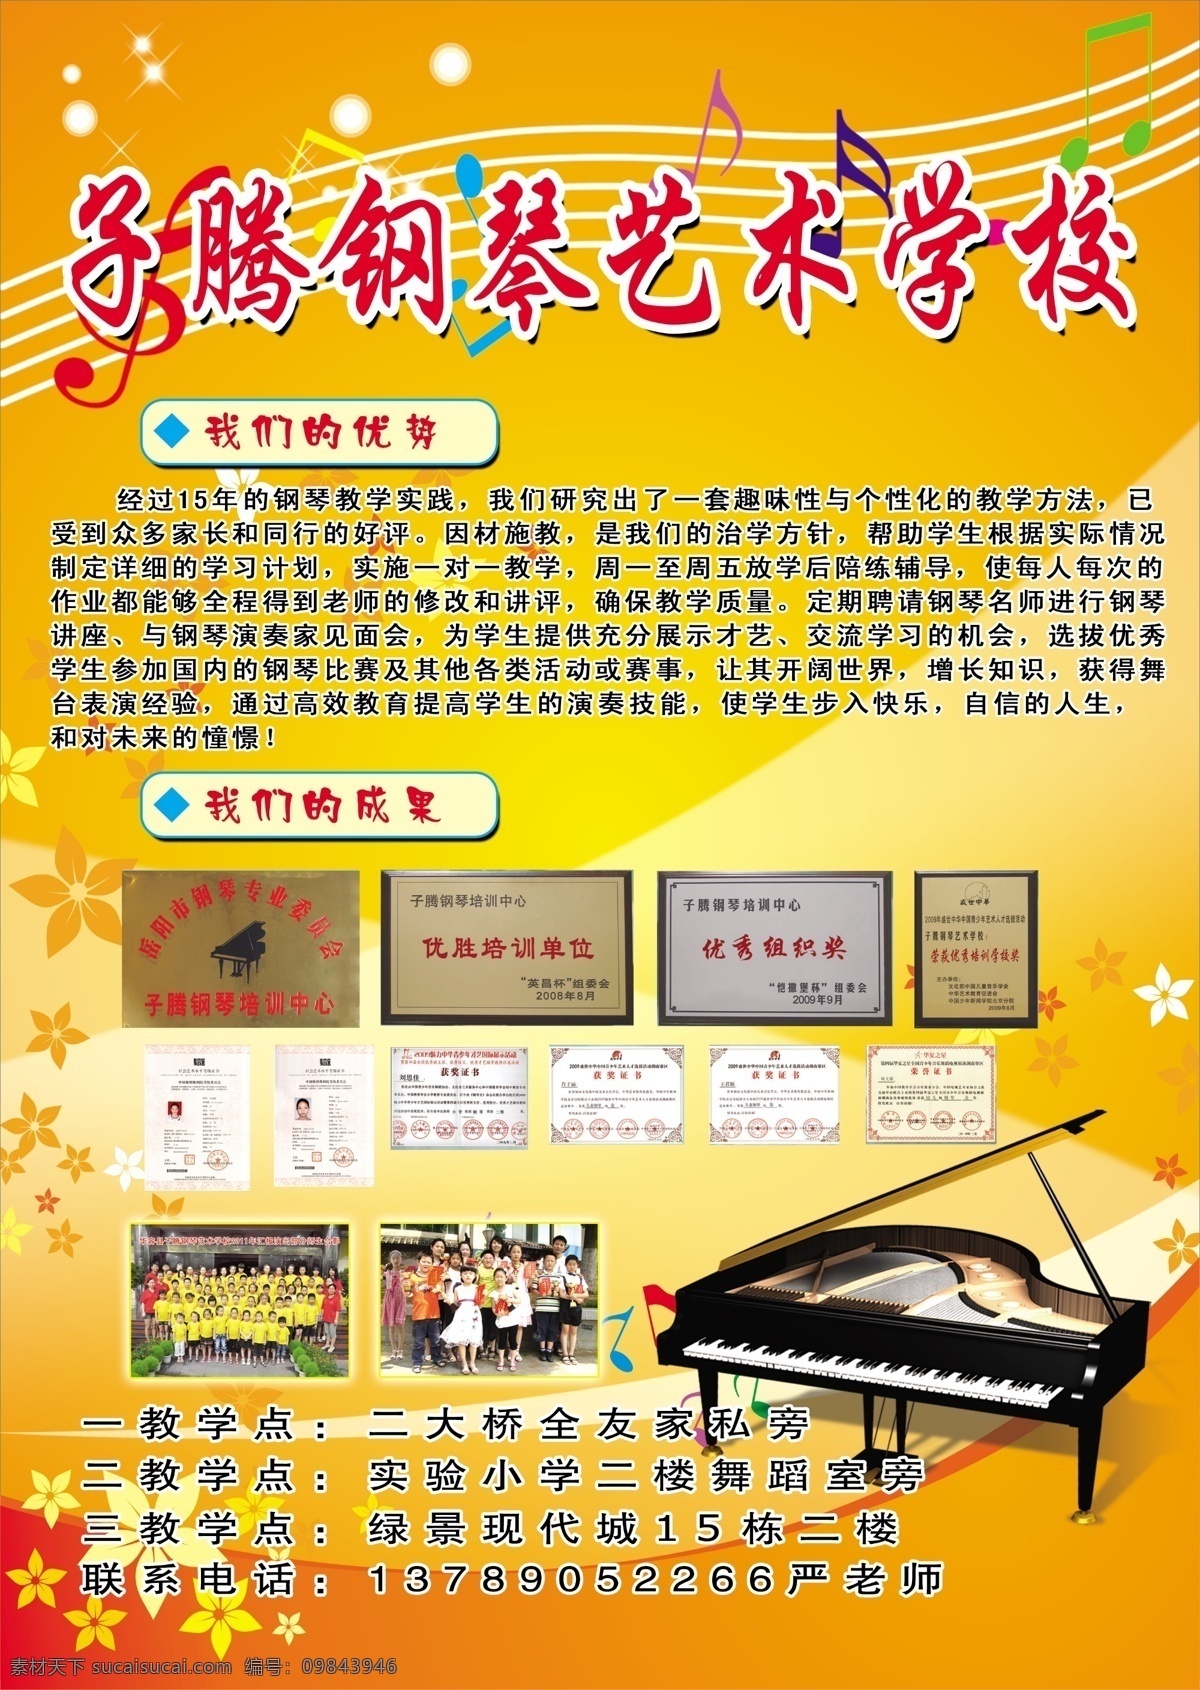 钢琴 培训学校 宣传 彩页 模版下载 宣传单 电子琴 卡西欧 dm宣传单 广告设计模板 源文件